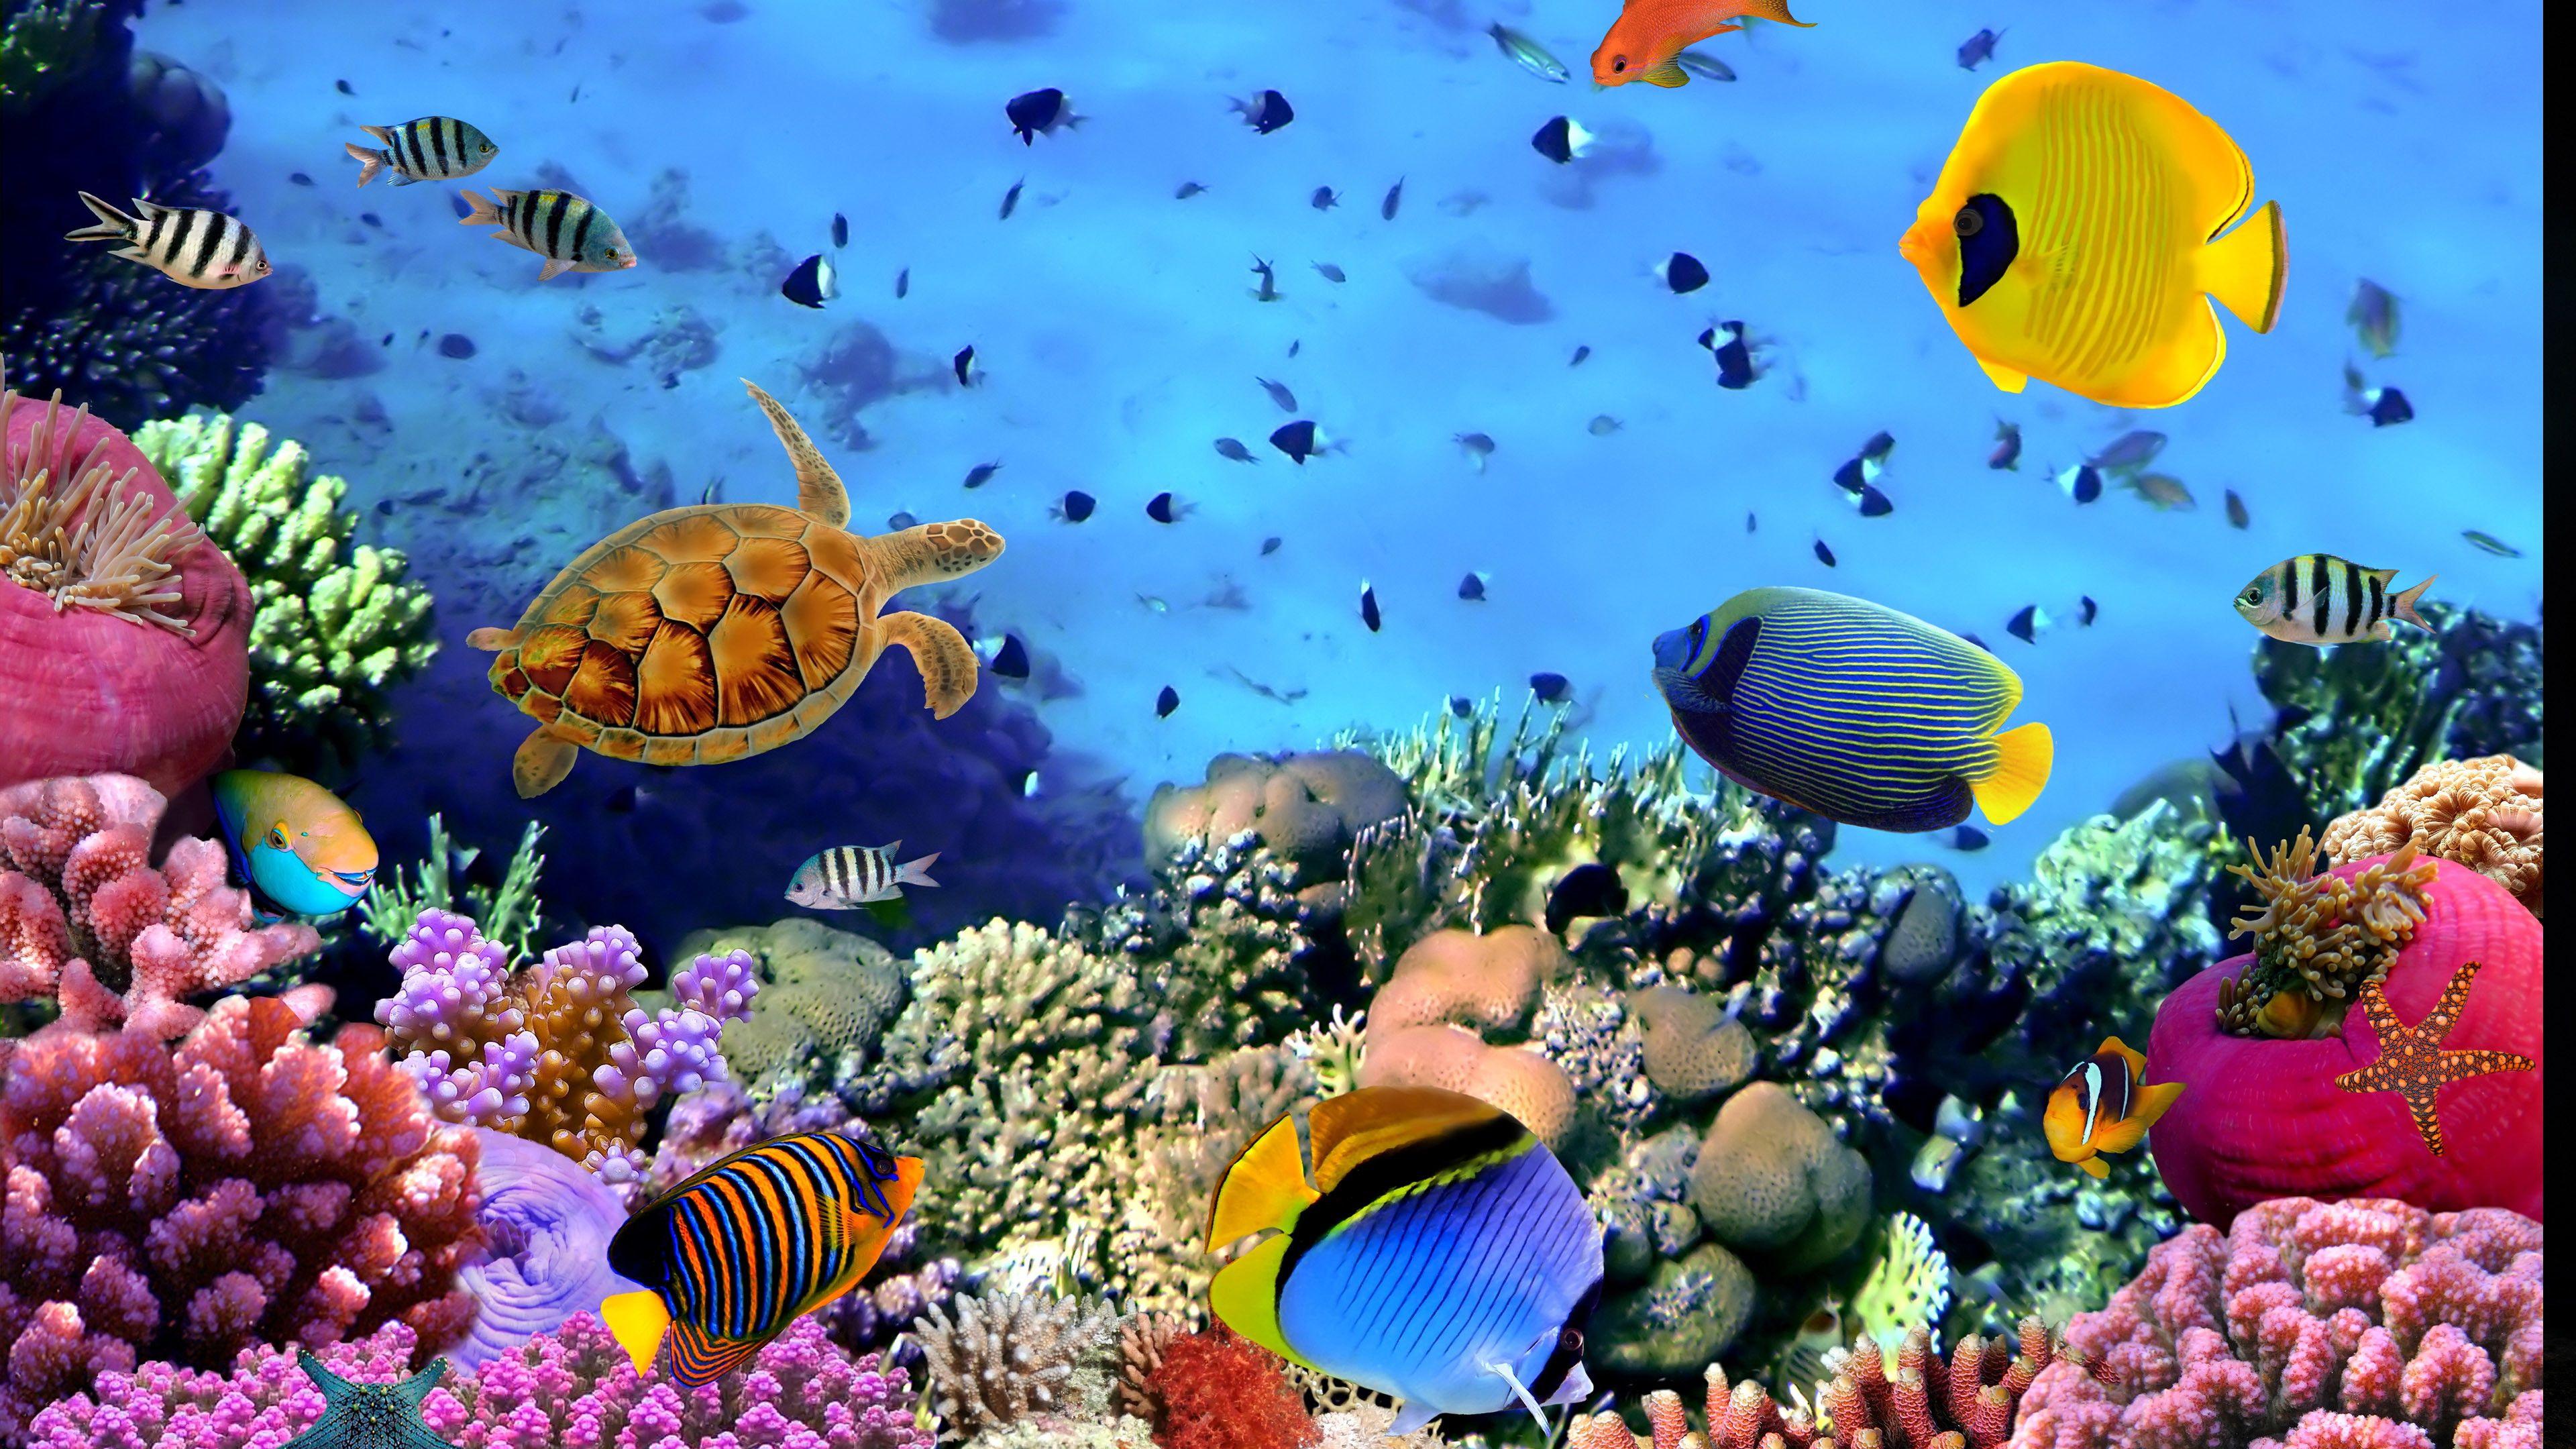 aquarium screensaver free download full version